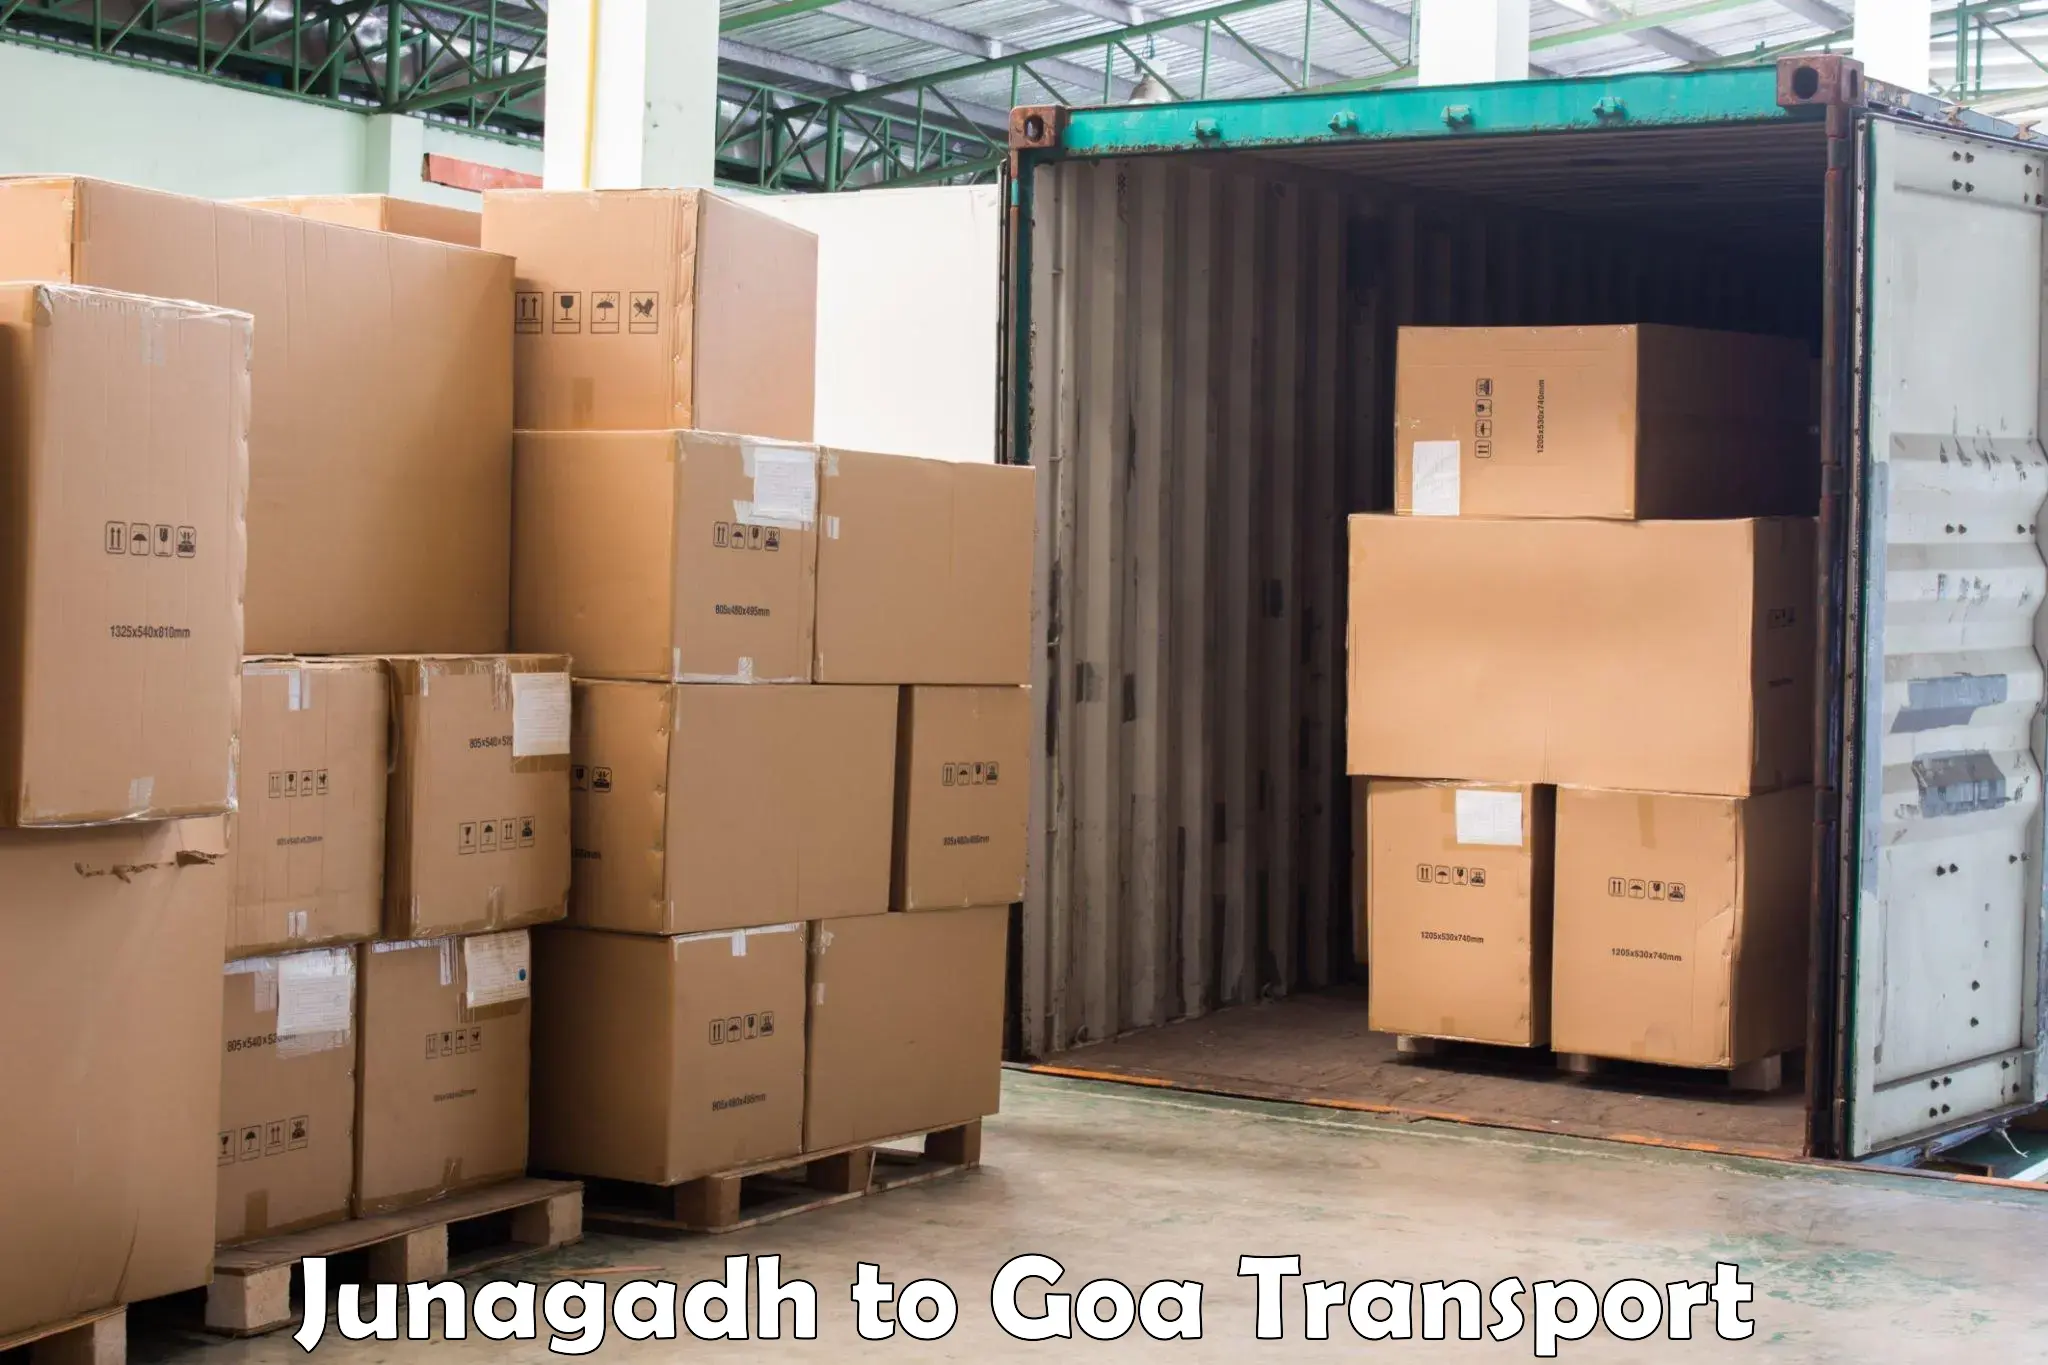 Daily transport service Junagadh to Panaji